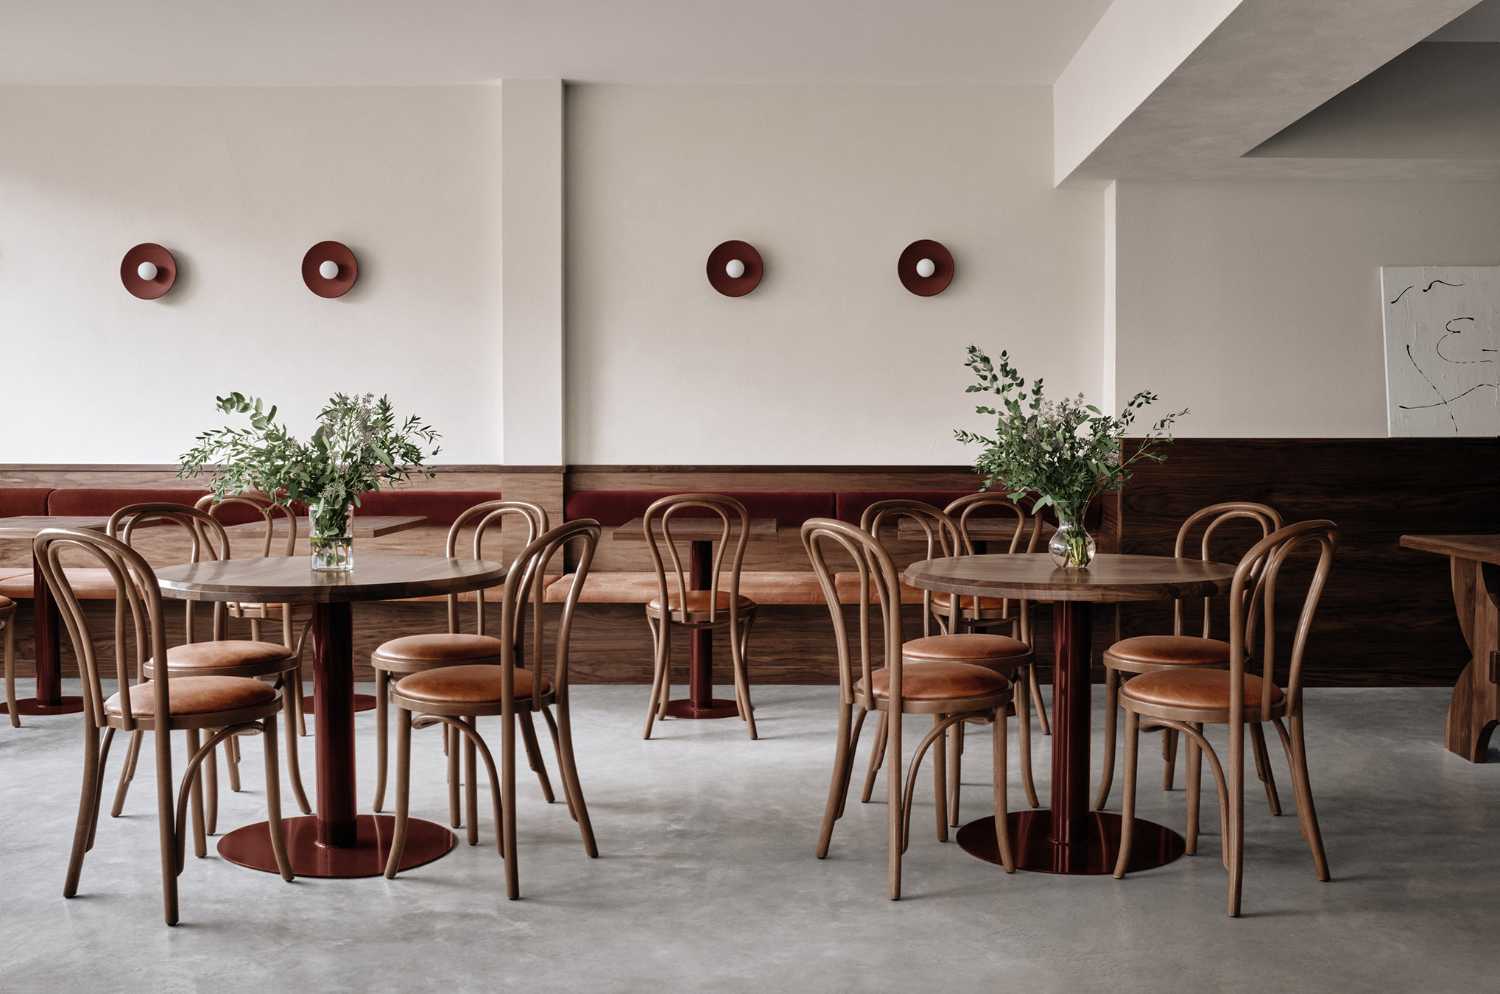 Café Chez Teta, a café with a minimal design like grandma's house